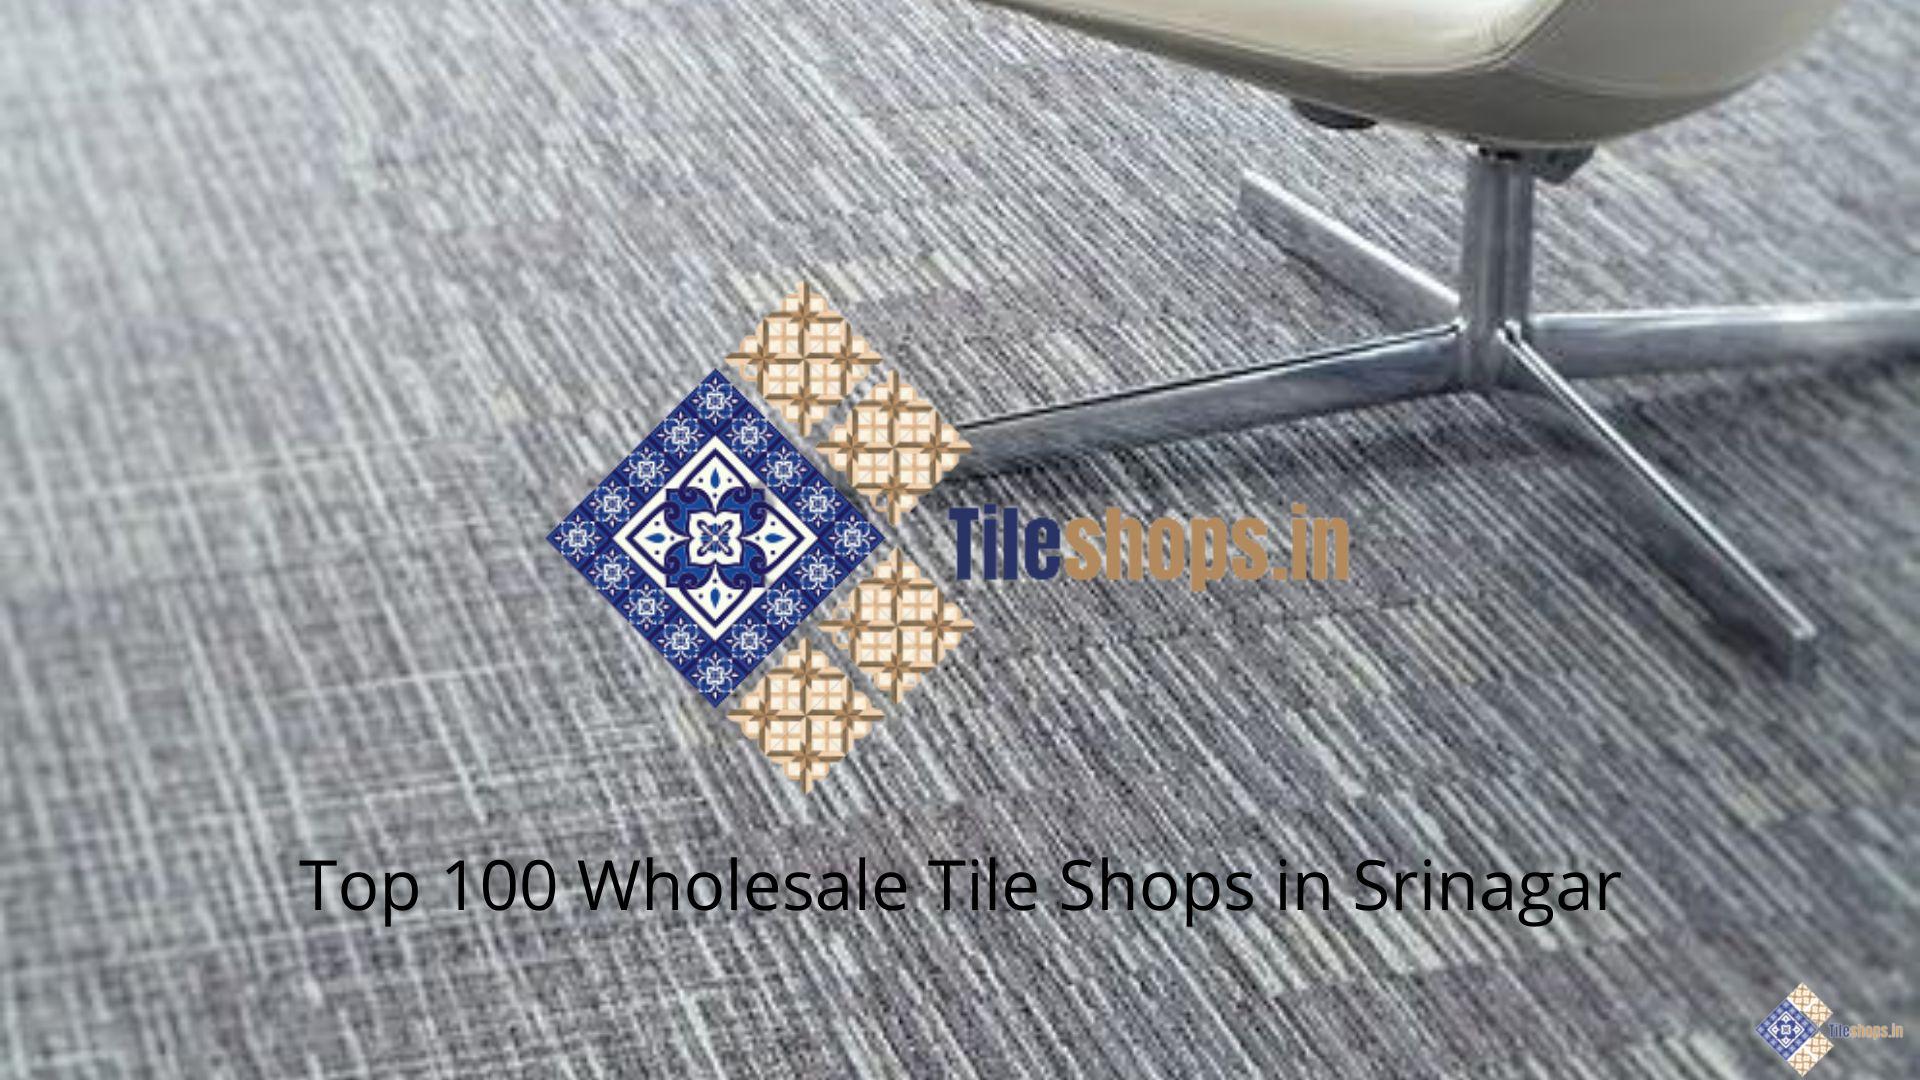 Top 100 Wholesale Tile Shops in Srinagar